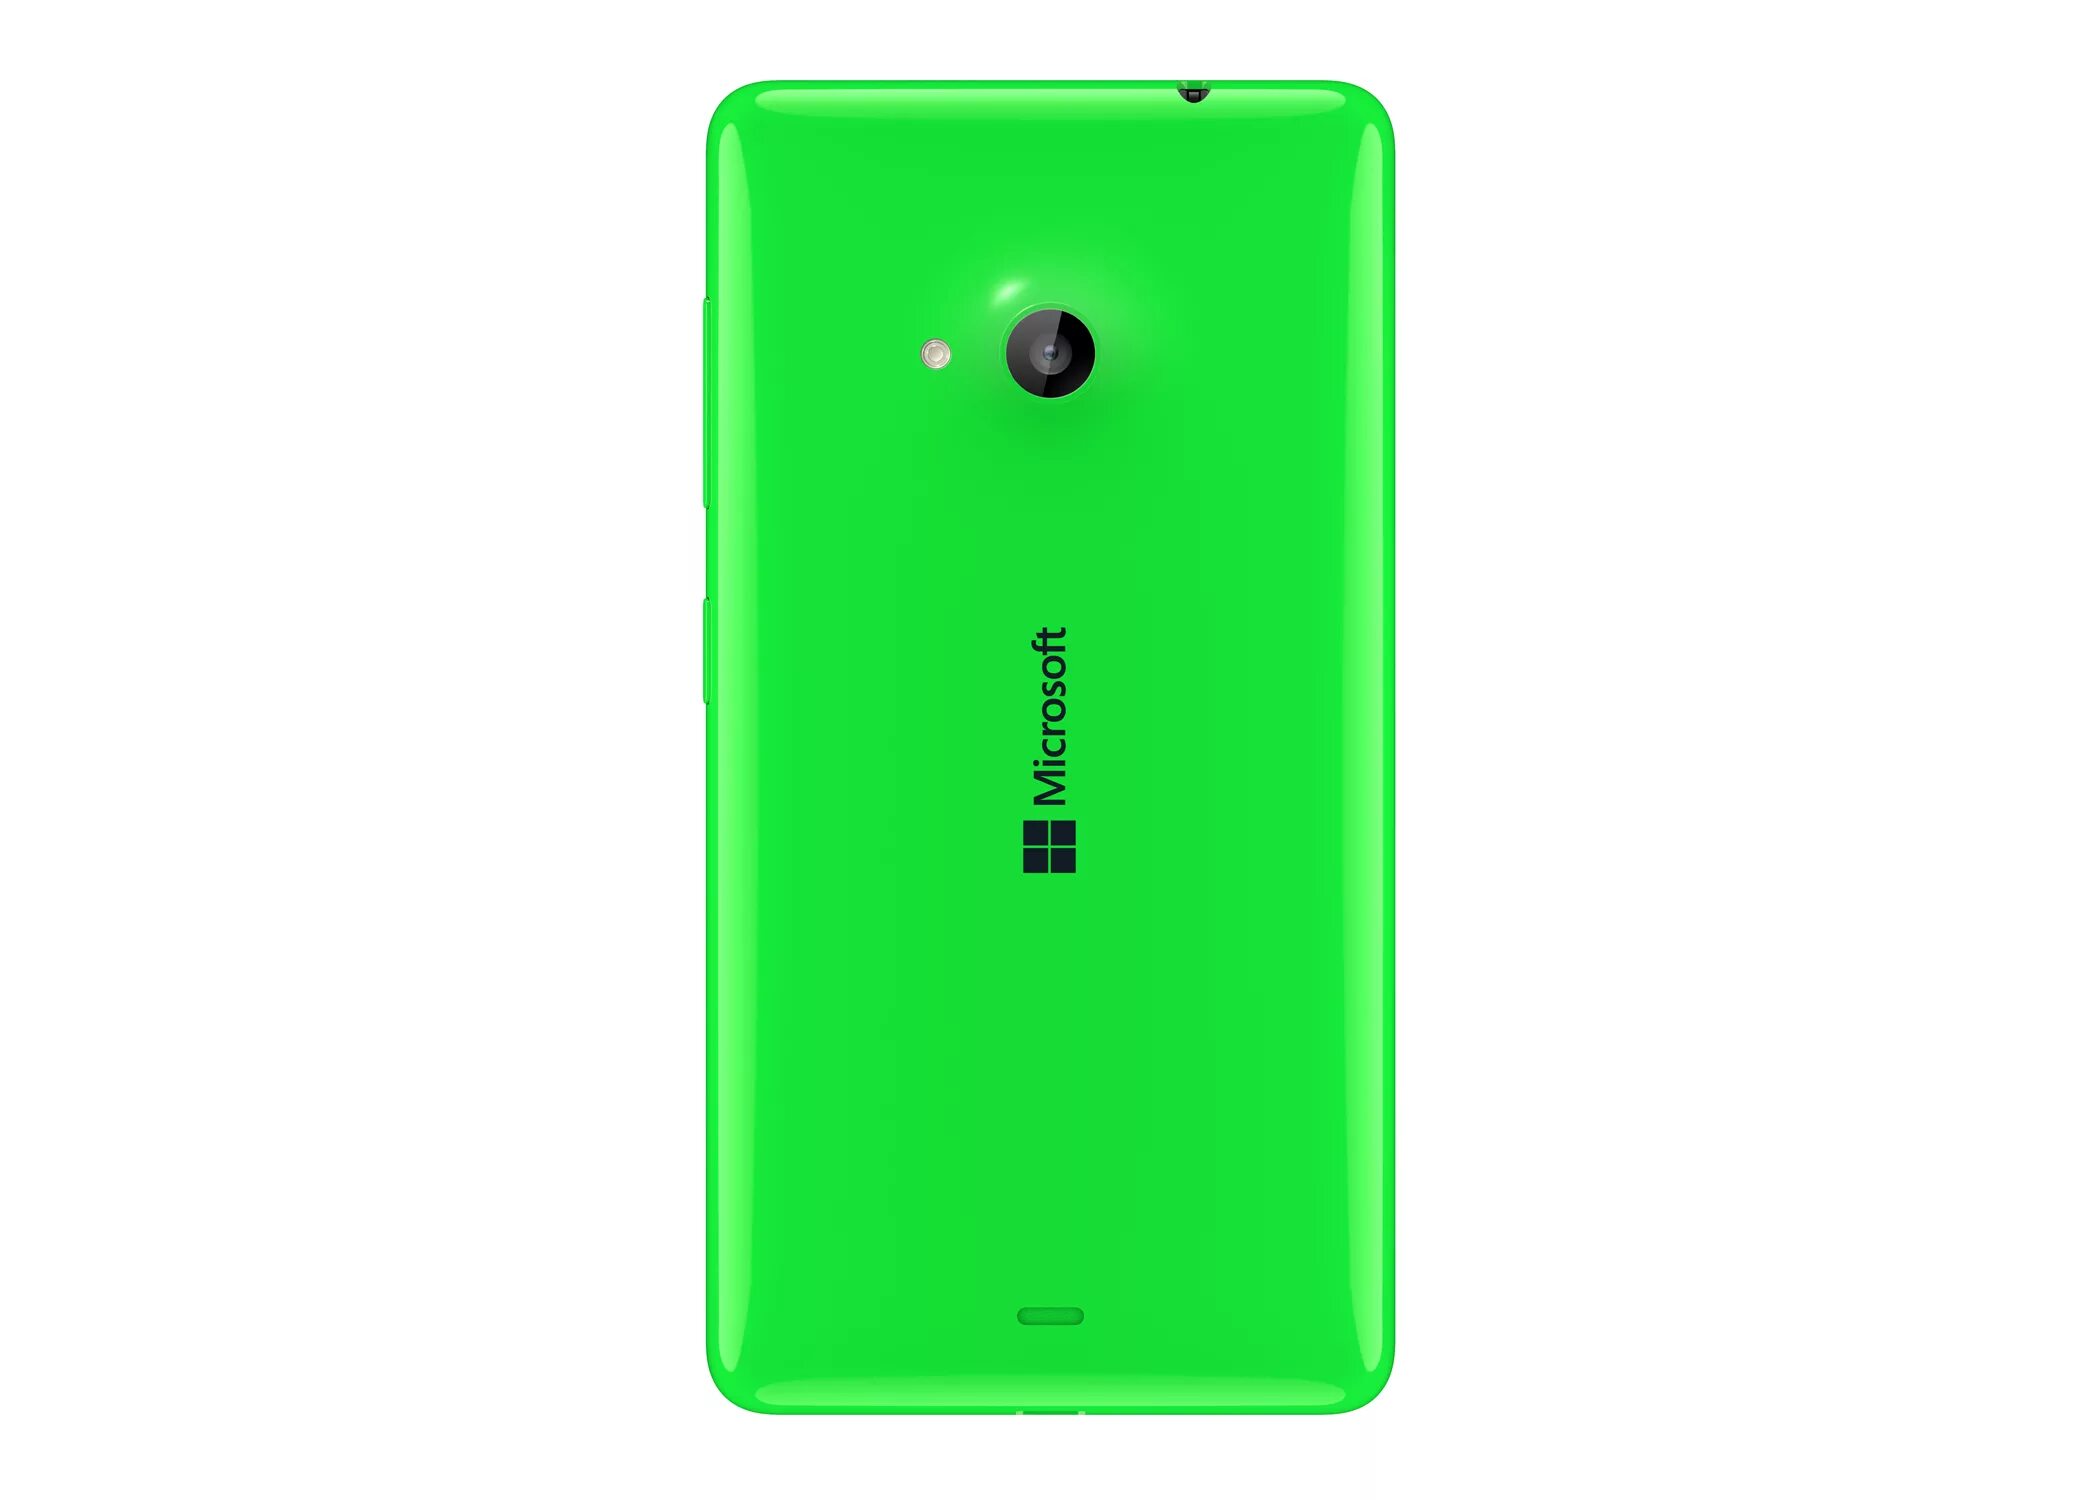 Microsoft 535. Nokia Lumia 535. Nokia Lumia 540. Microsoft Lumia 535 Dual. Нокиа Майкрософт люмия 535.